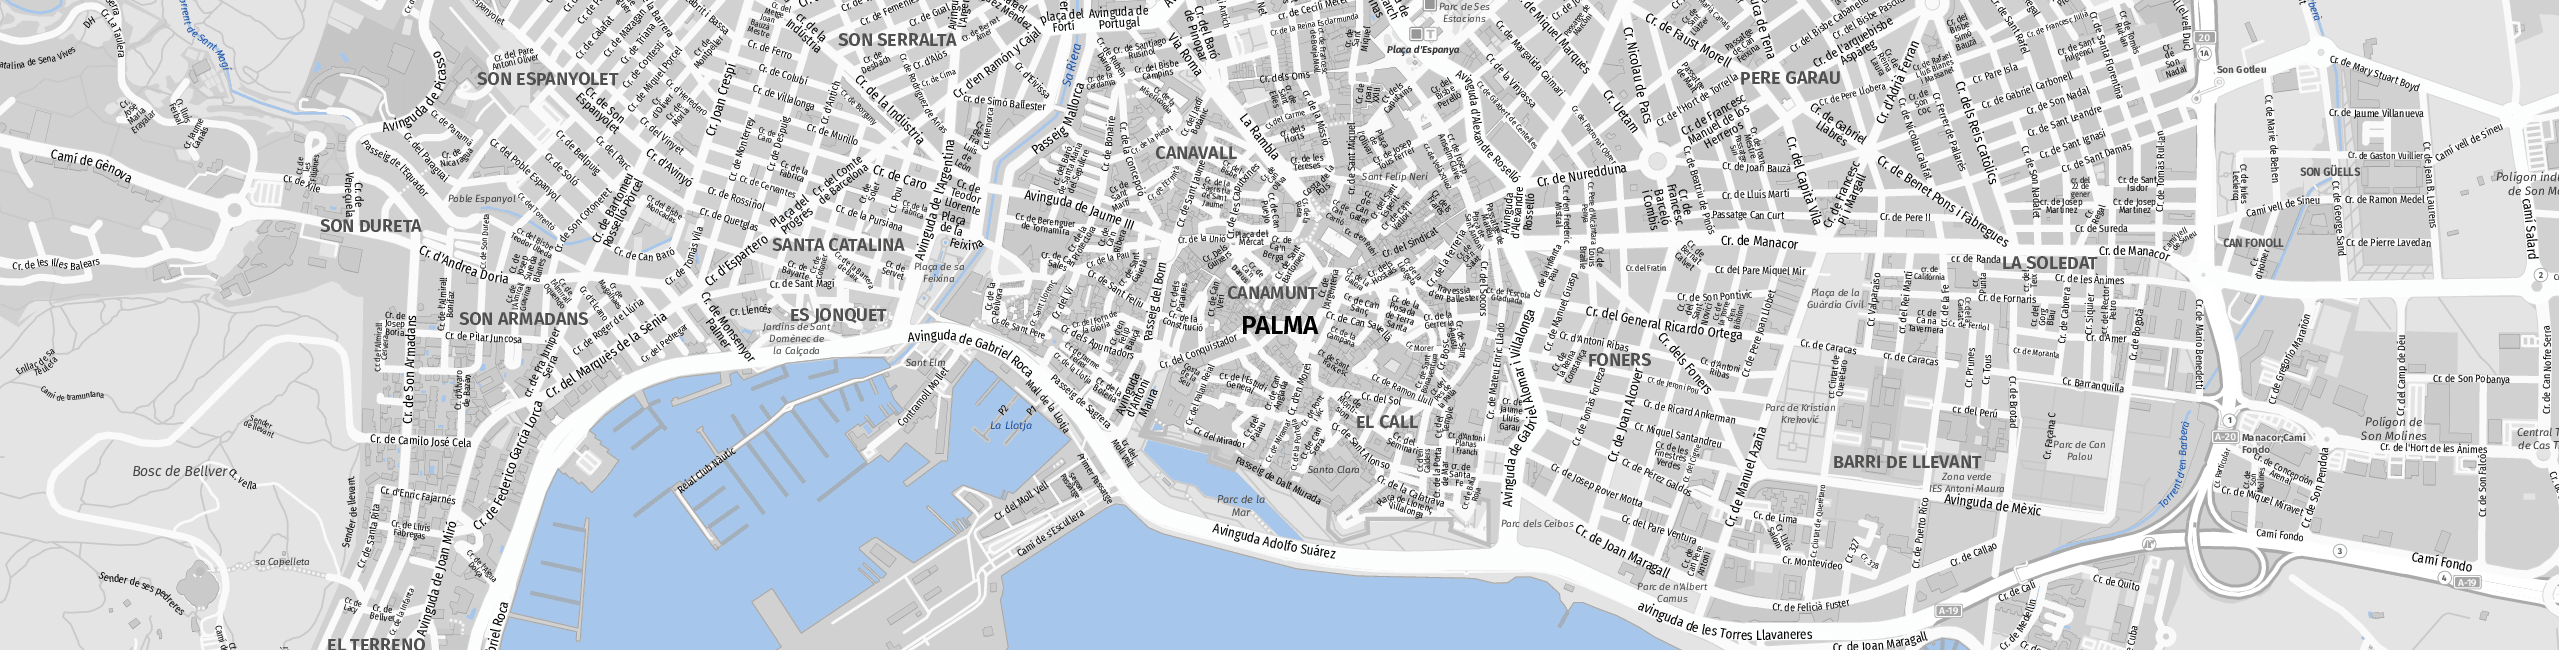 Stadtplan Palma de Mallorca zum Downloaden.